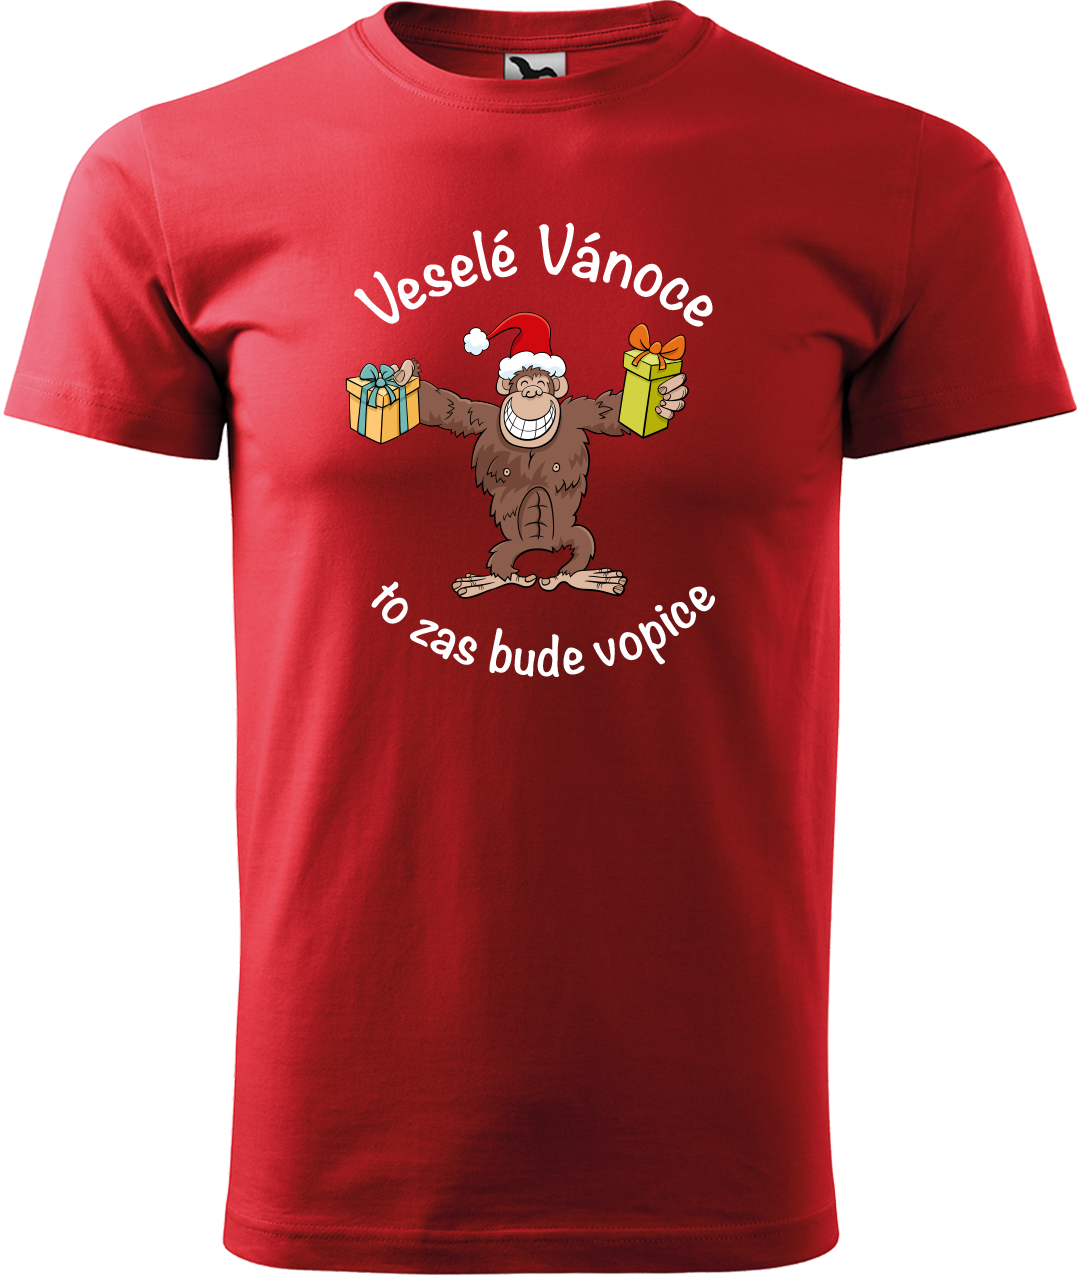 Pánské vánoční tričko - Veselé Vánoce to zas bude vopice (hnědý opičák) Velikost: S, Barva: Červená (07)